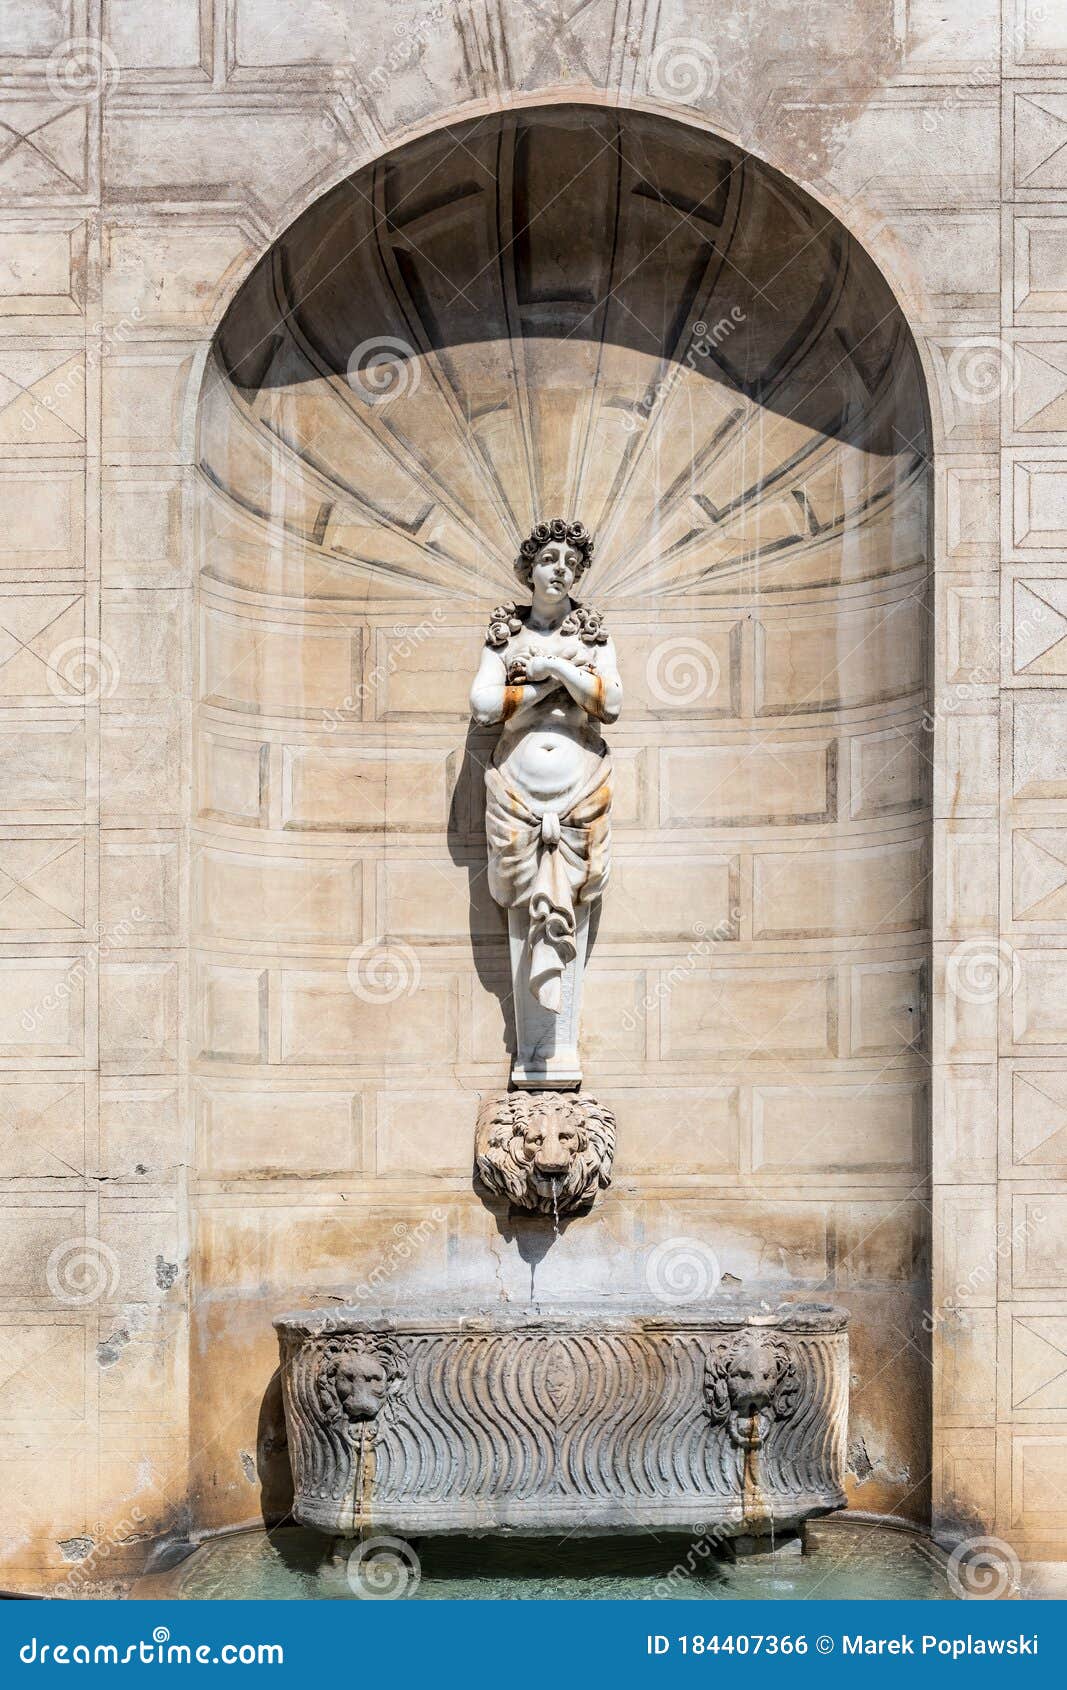 palazzo spada`s drinking fountain in capo di ferro` square, rome